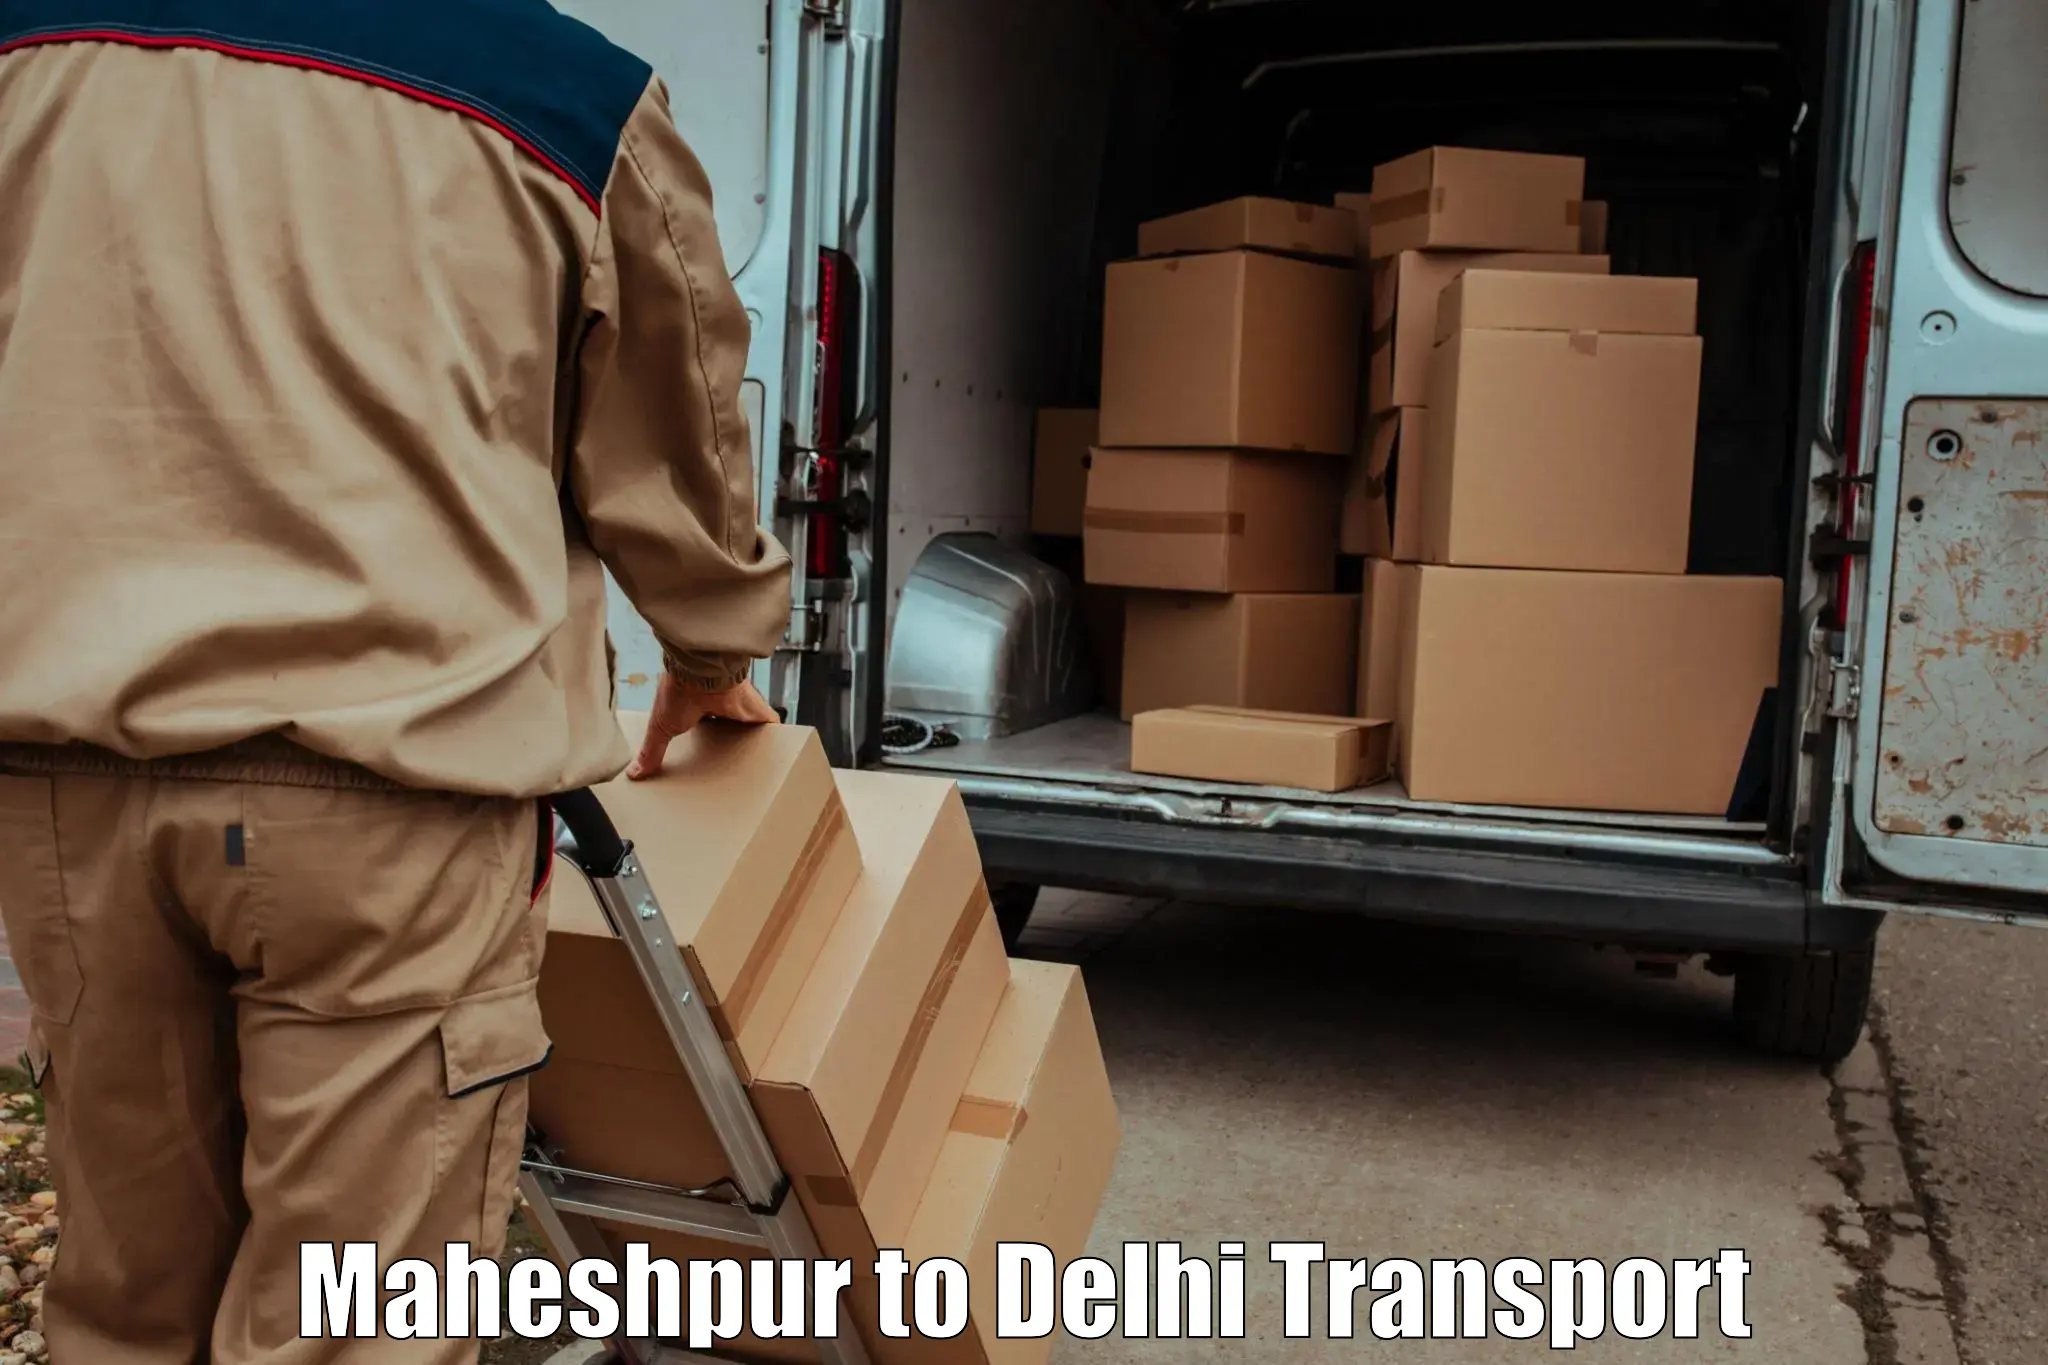 Daily transport service Maheshpur to Kalkaji